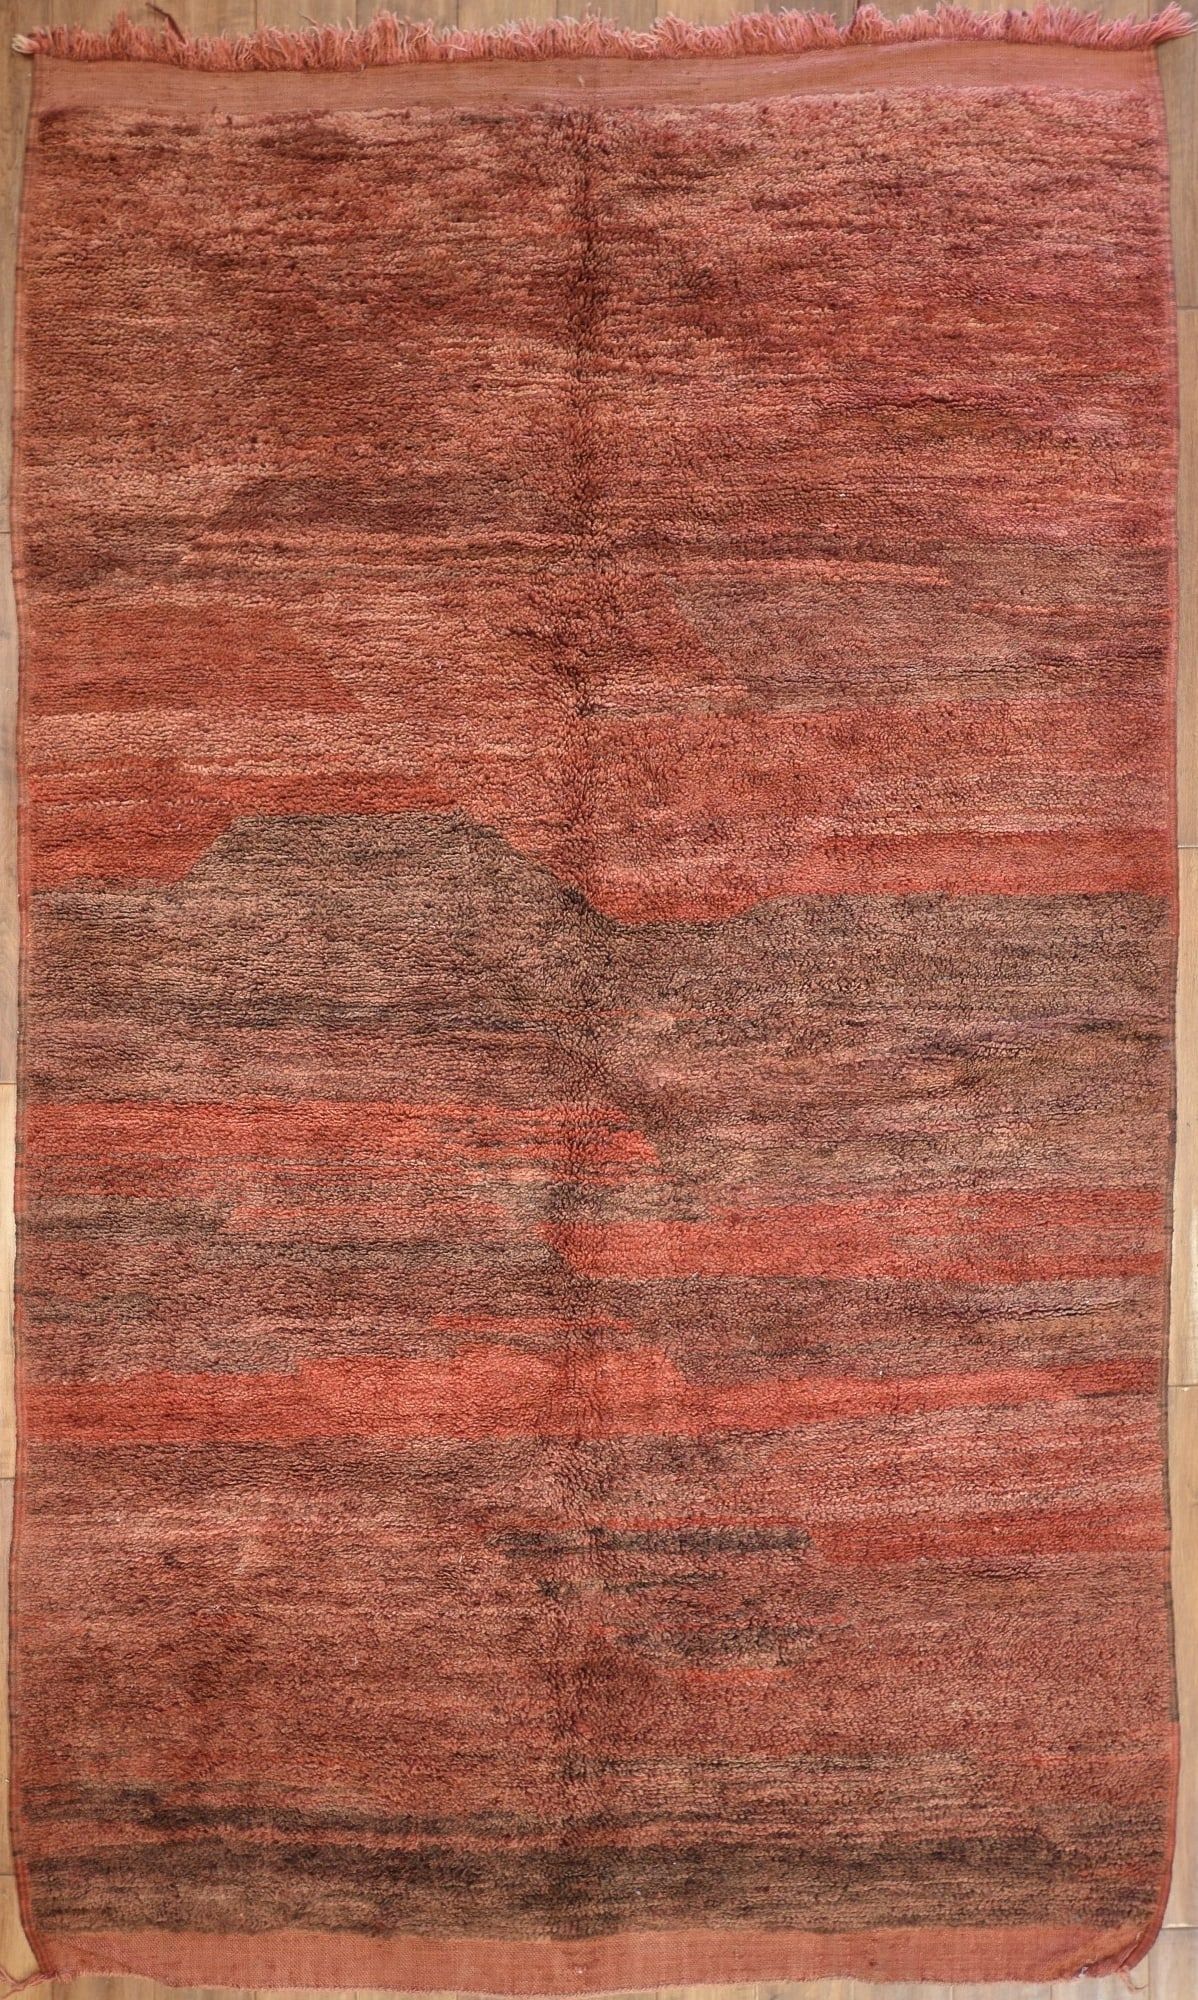 A MOROCCAN CARPETA Moroccan carpetdimensions 2fb330e